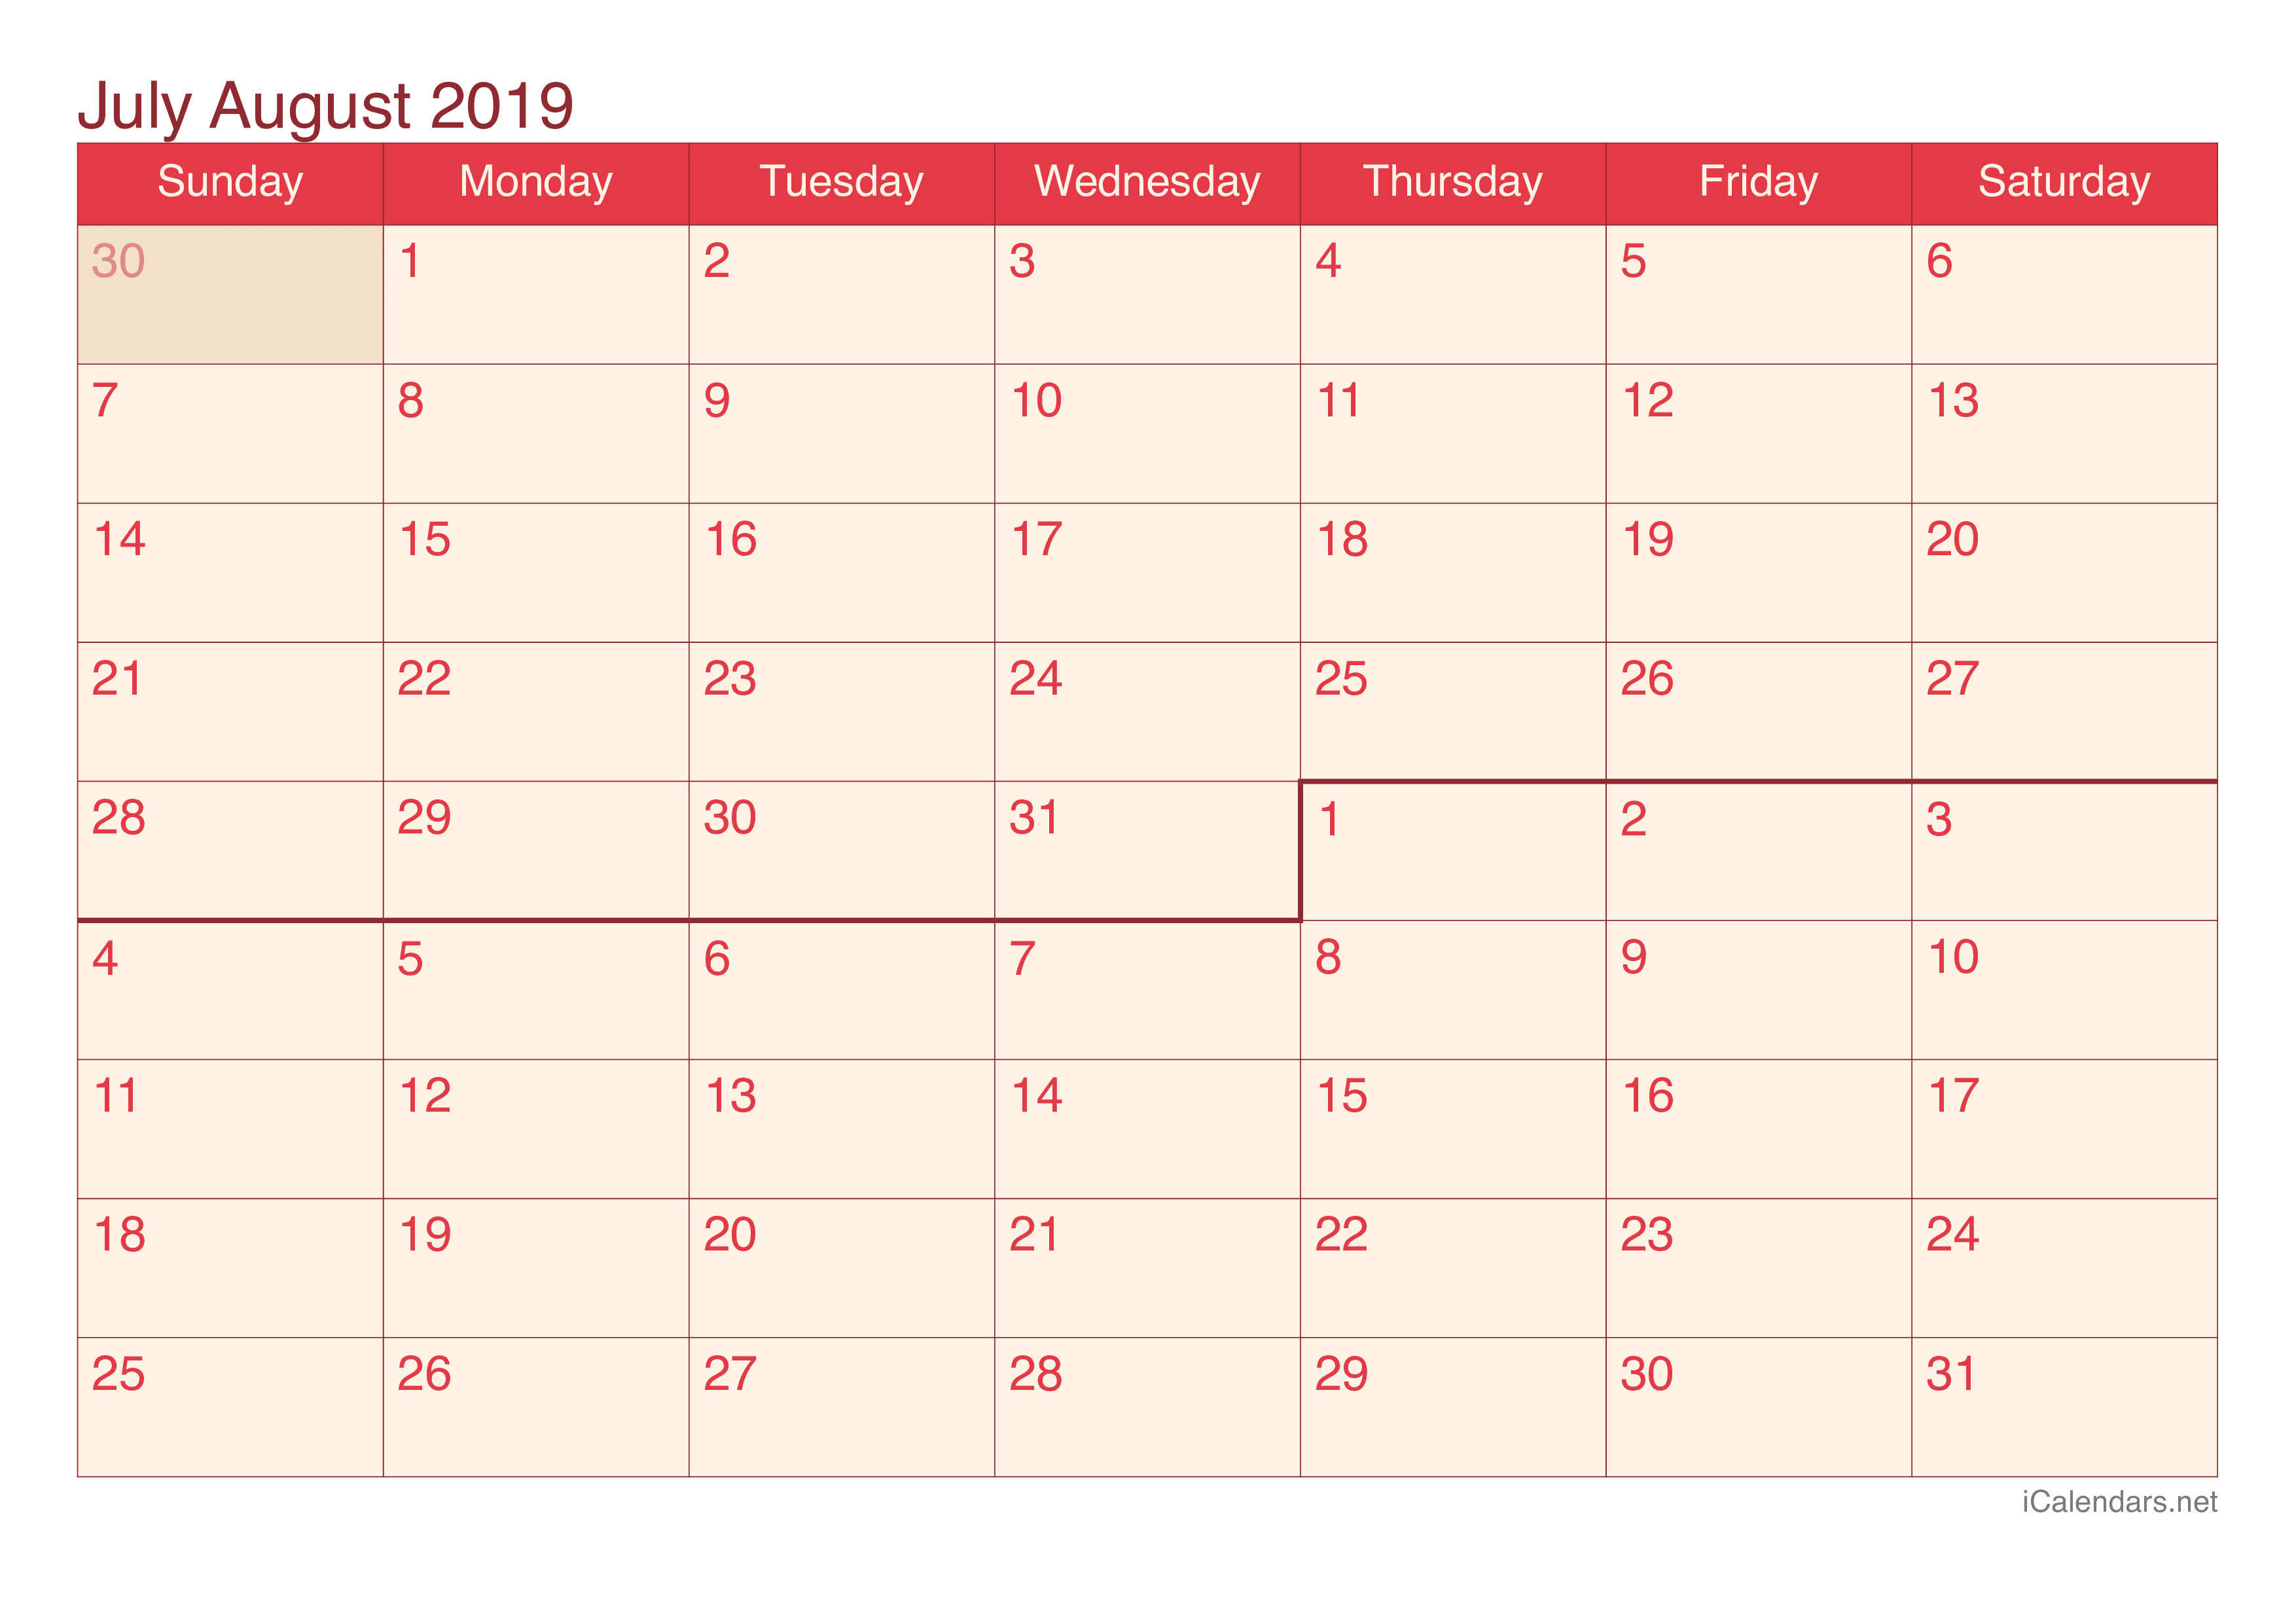 2019 July August Calendar - Cherry